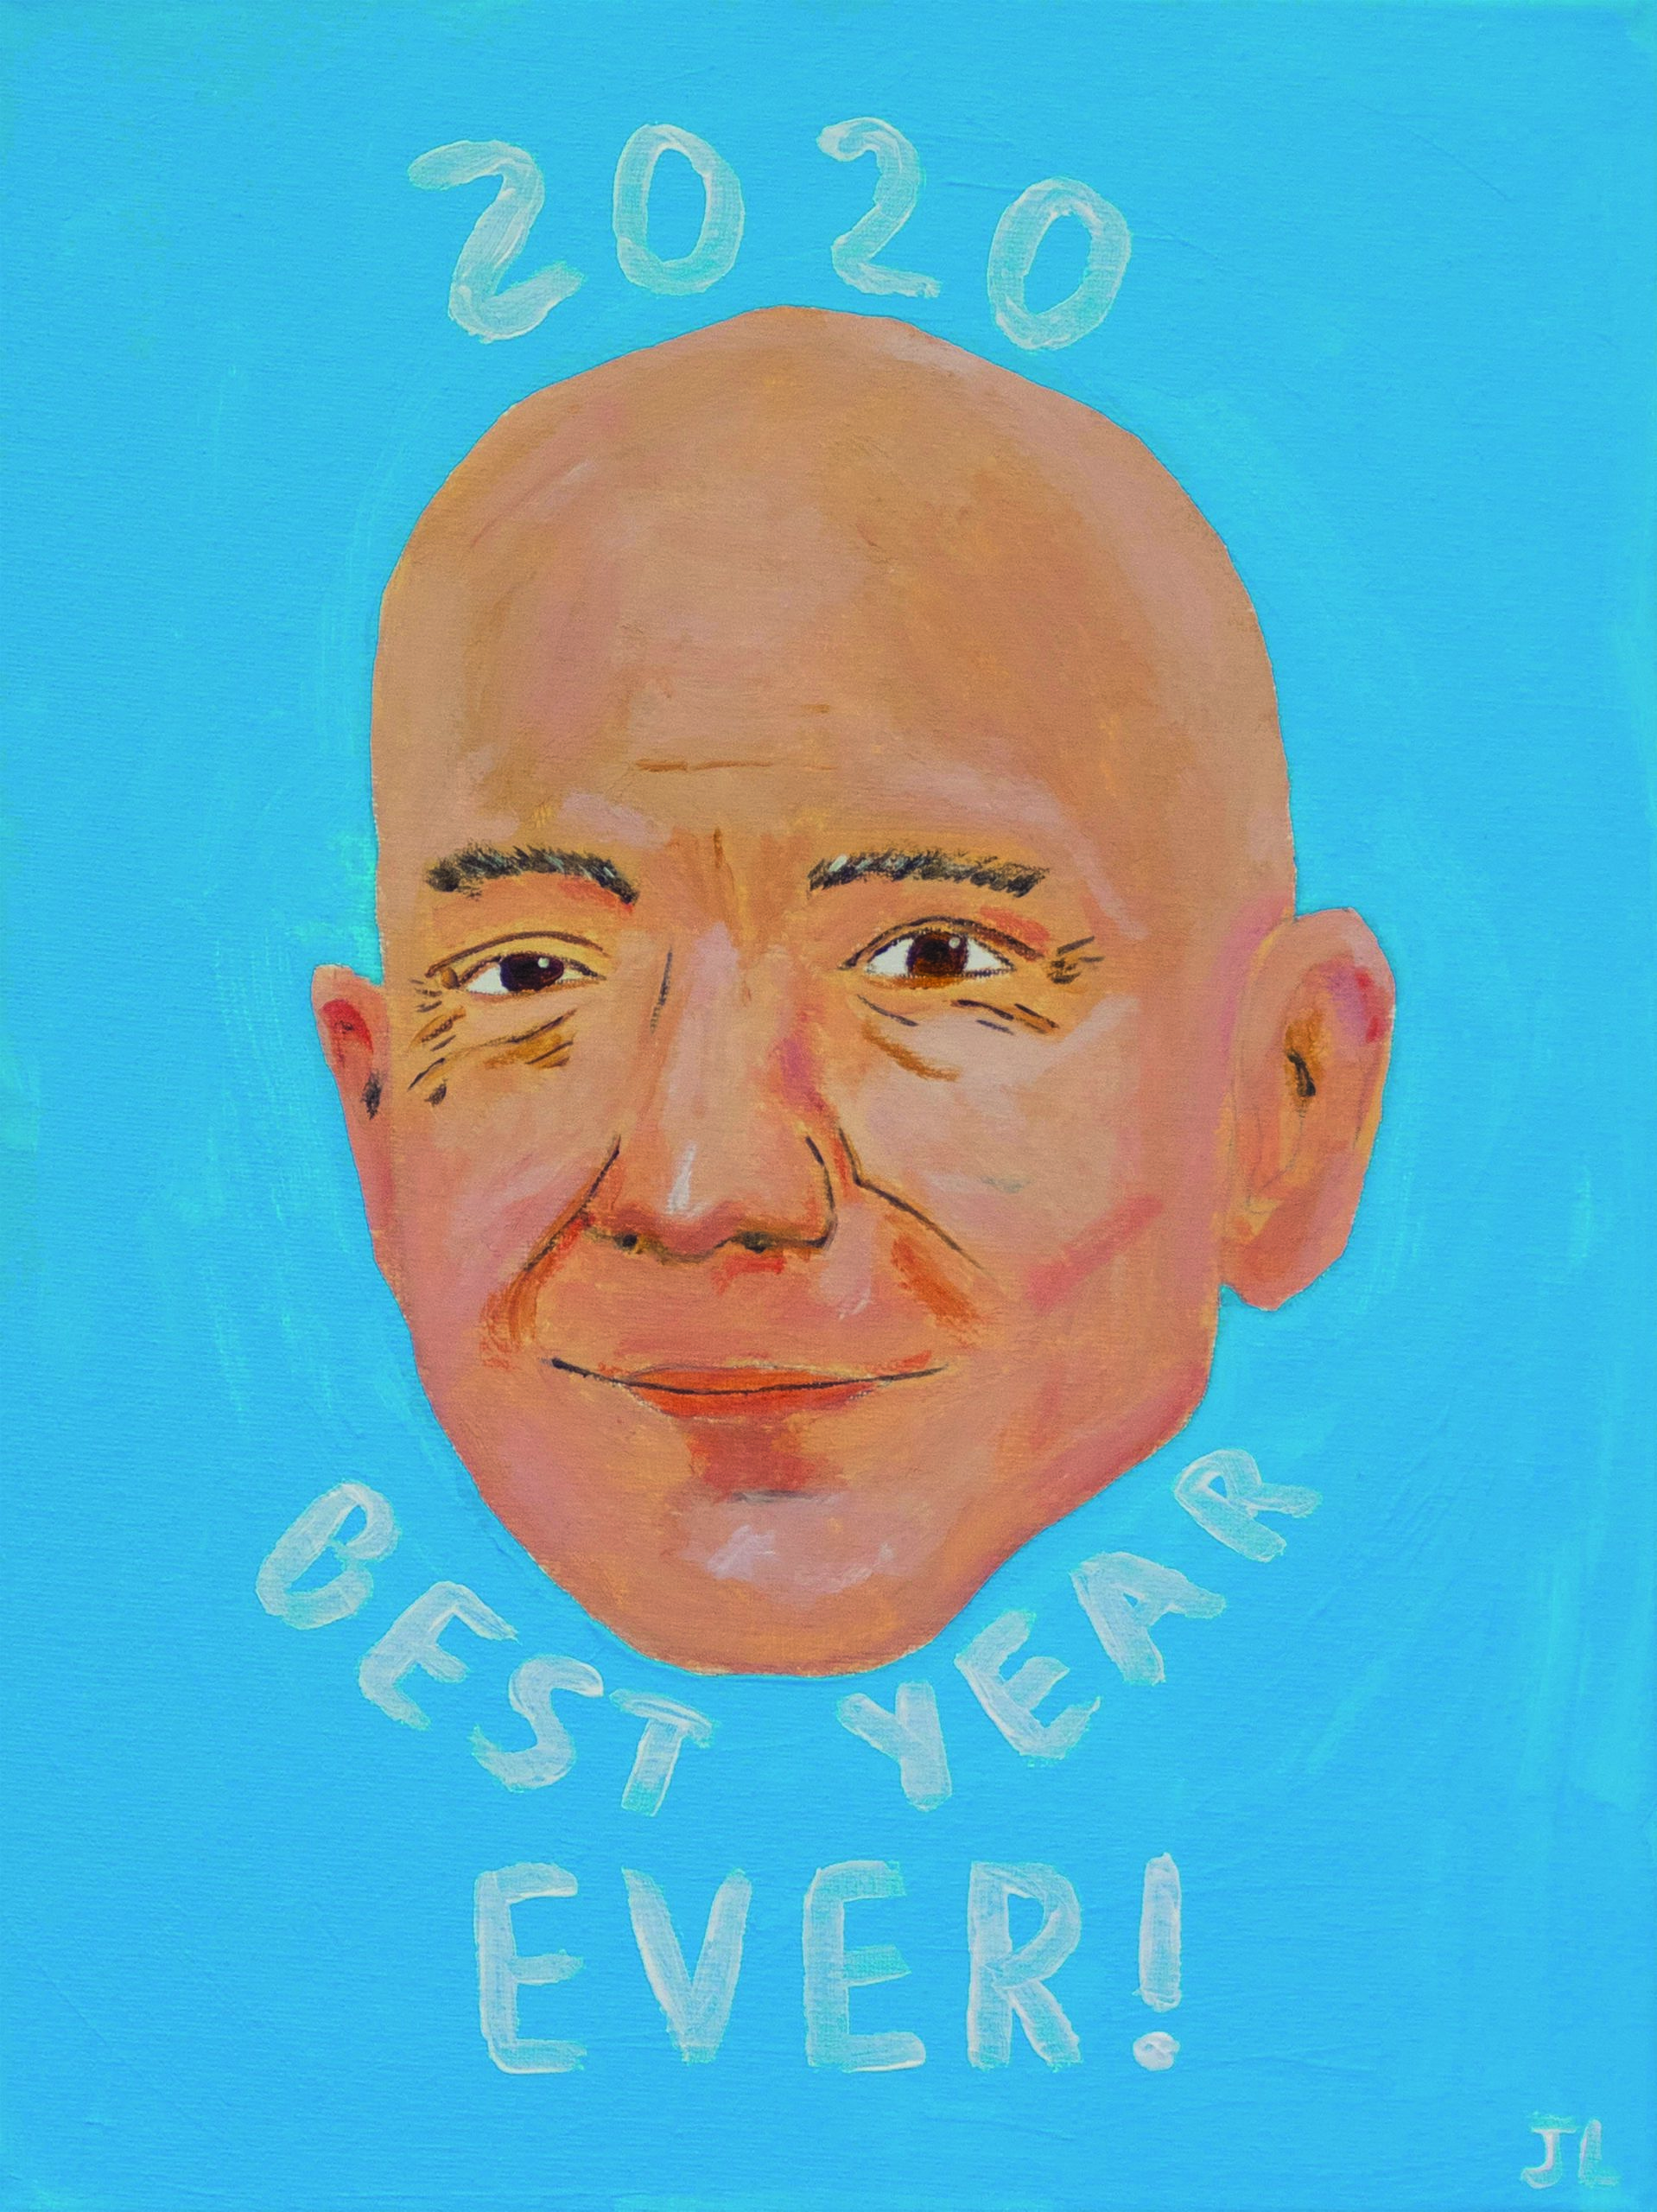 Joe Lycett's portrait of Jeff Bezos